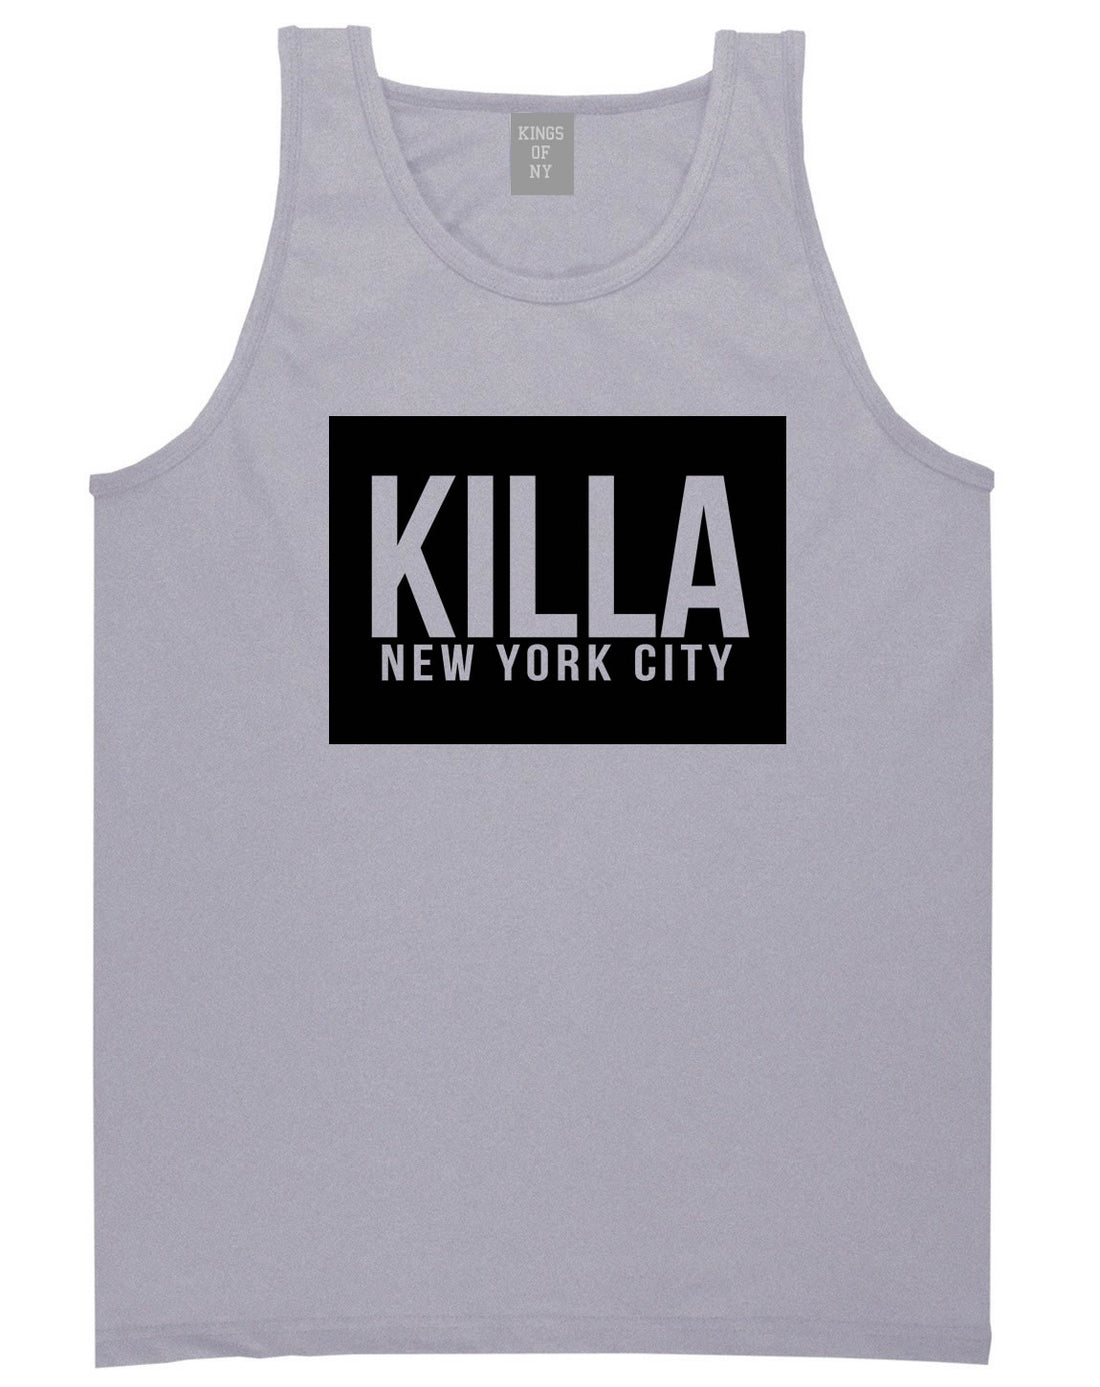 Killa New York City Harlem Tank Top in Grey by Kings Of NY